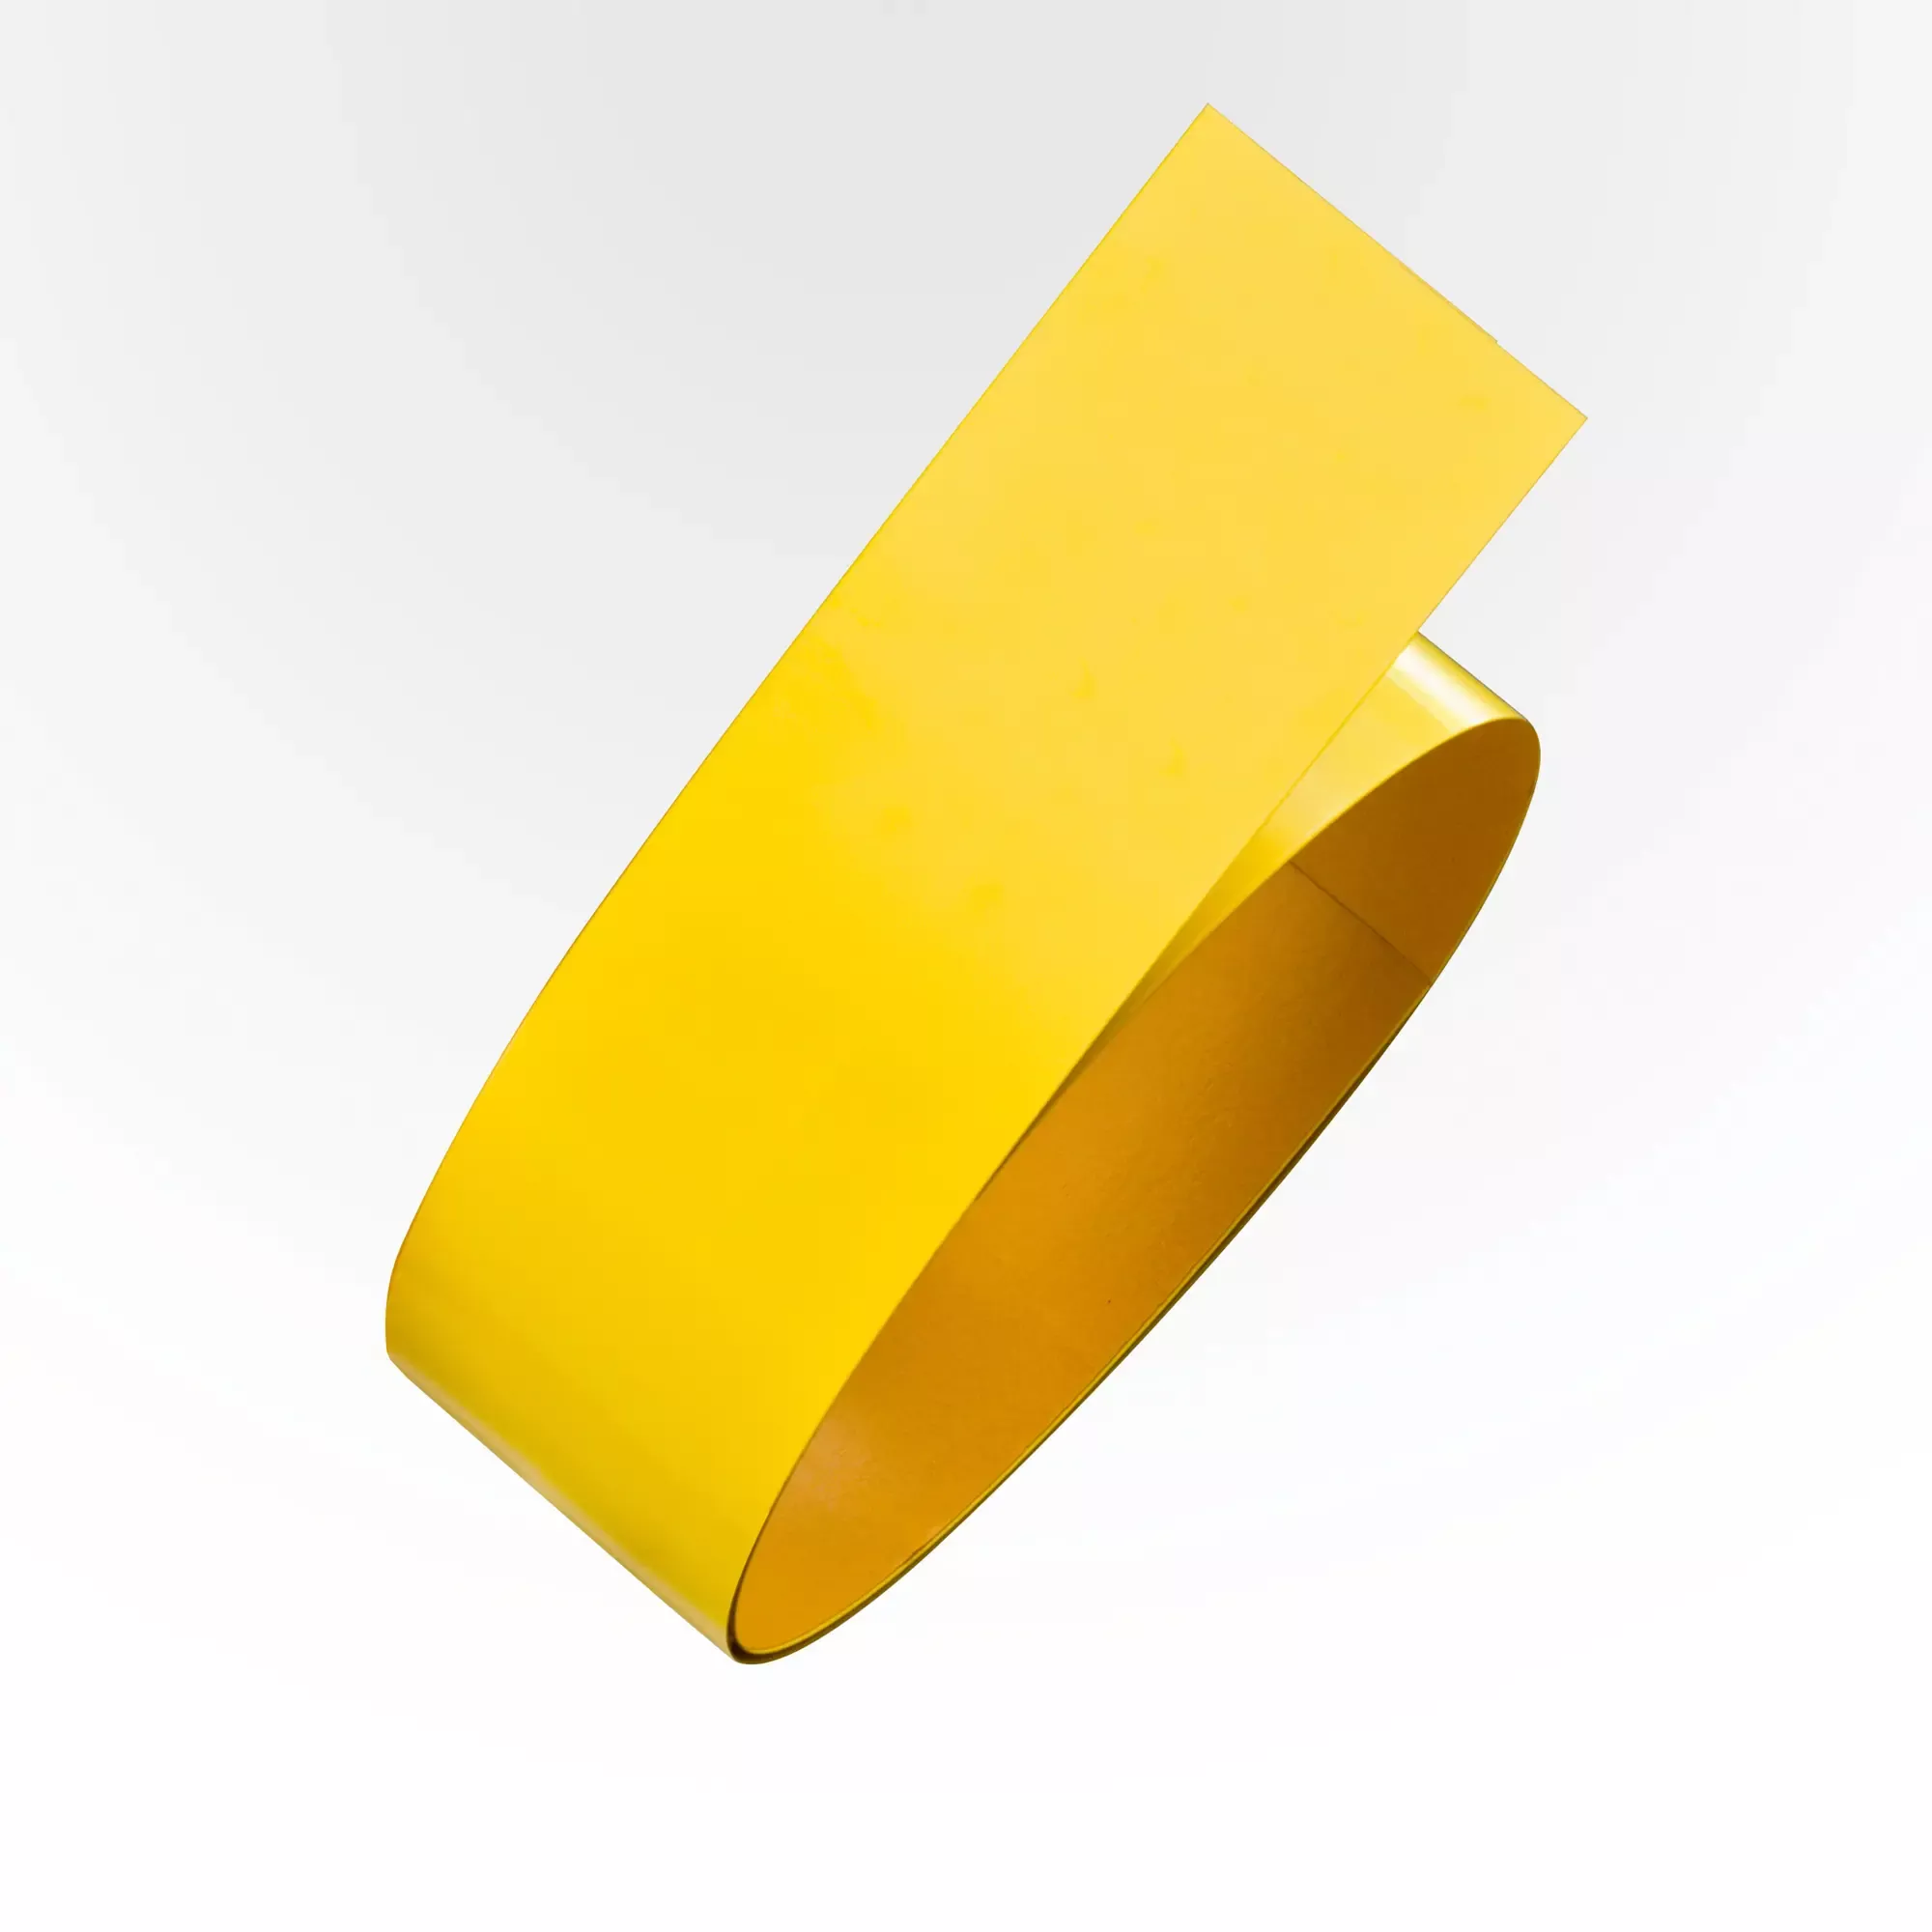 Stahl-Tape Proline, staplerfestes Bodenmarkierungsband, aus farbigem Flachstahl, selbstklebend, gelb, 75 mm x 1,5 m